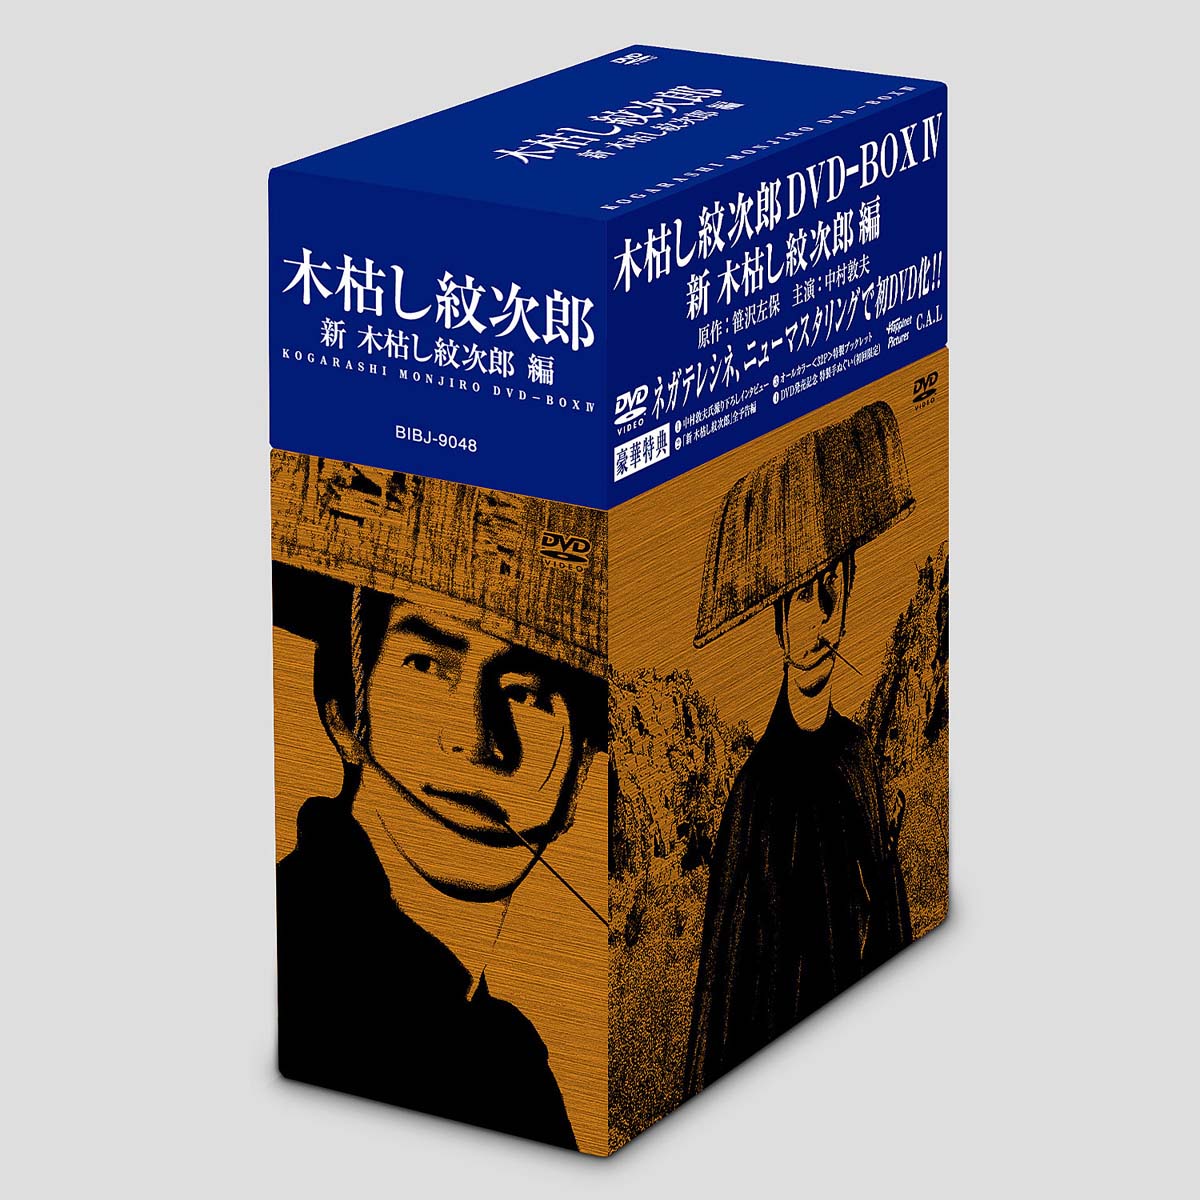 木枯し紋次郎 DVD-BOX 4 新・木枯し紋次郎編